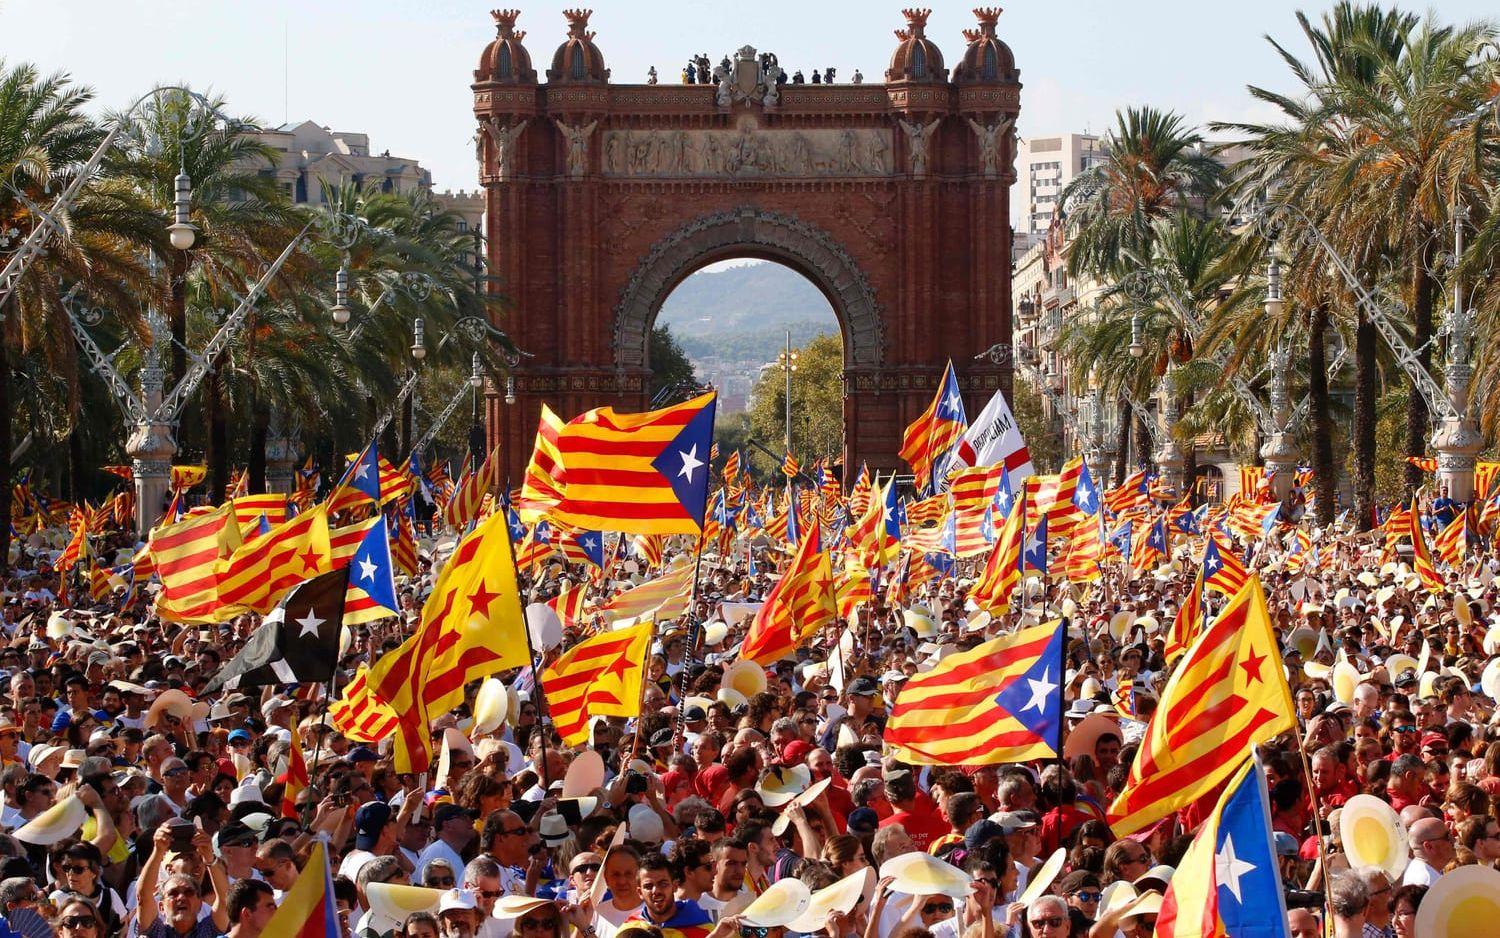 Palmer och historiska byggnader utgjorde en vacker fond till det katalanska nationaldagsfirandet. Bild: TT